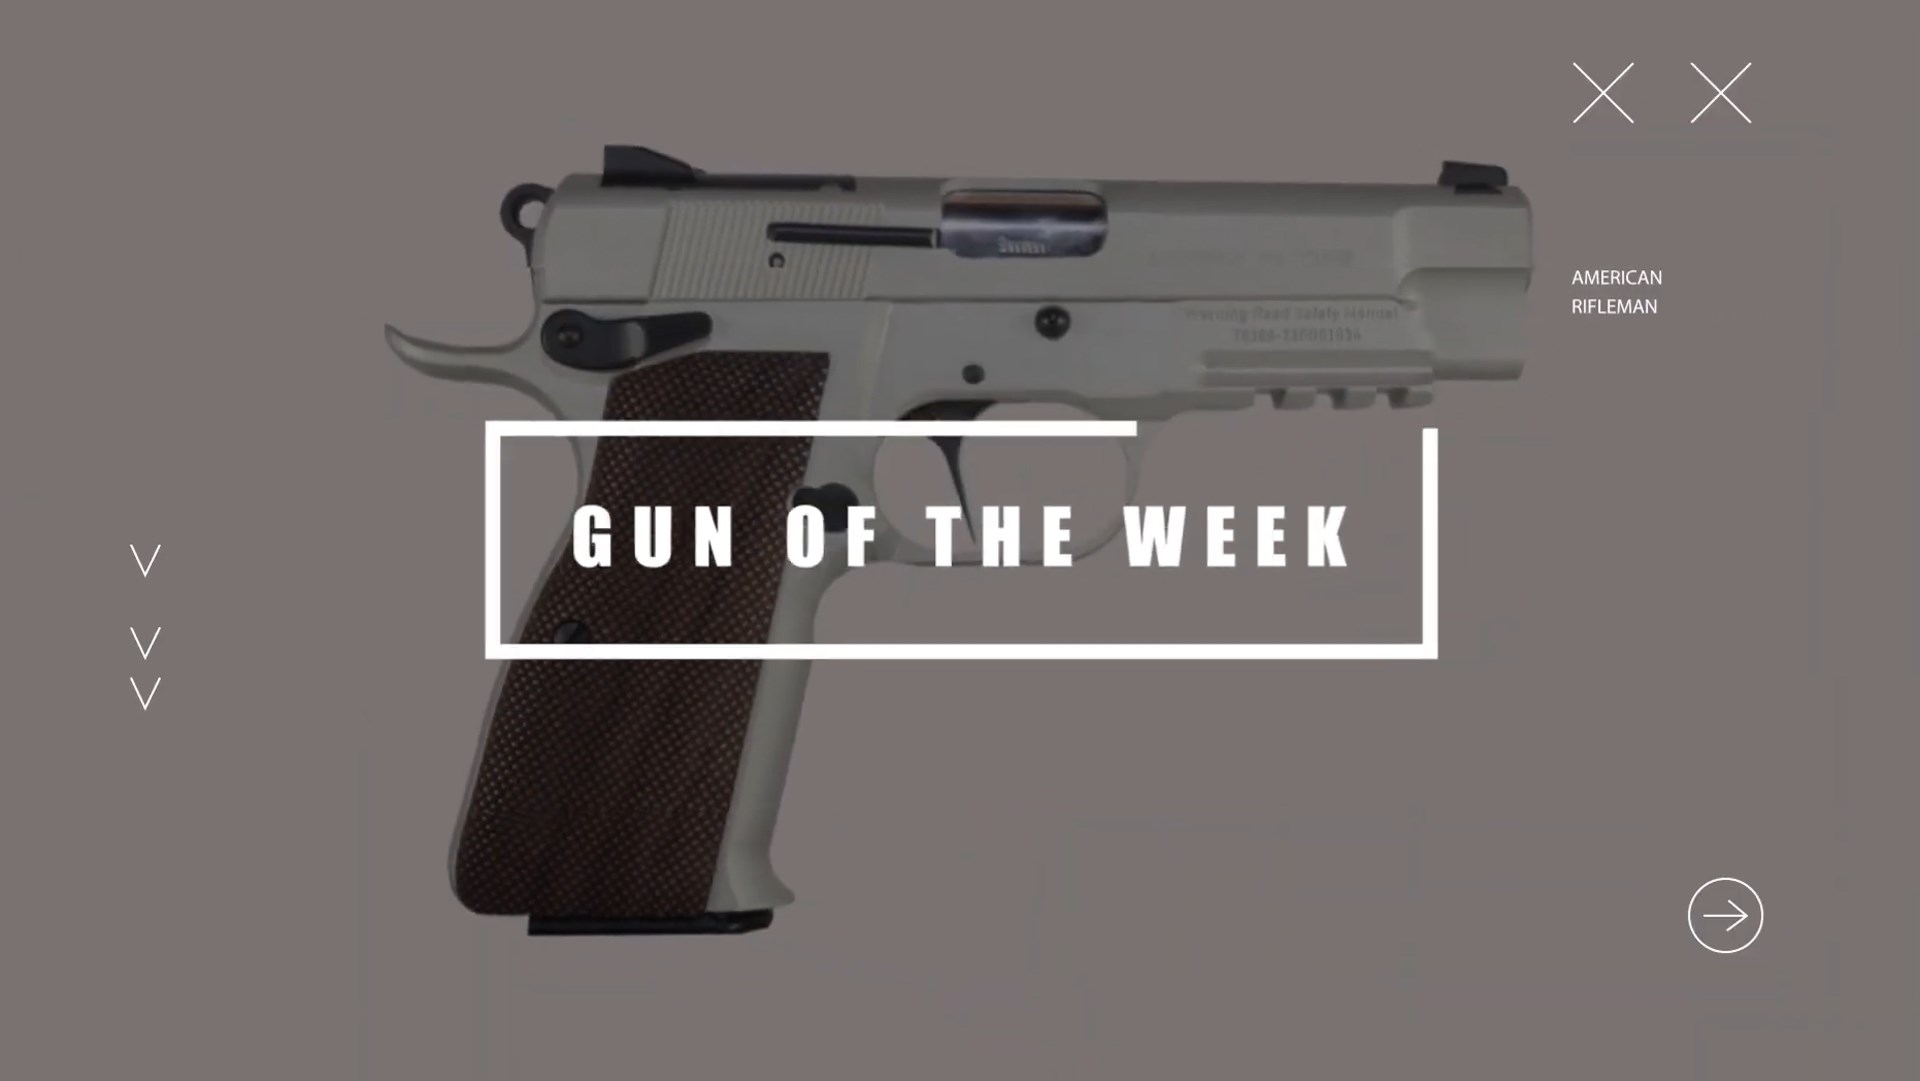 Gun of the week title screen overlay text box over gun pistol stainless steel handgun high power girsan